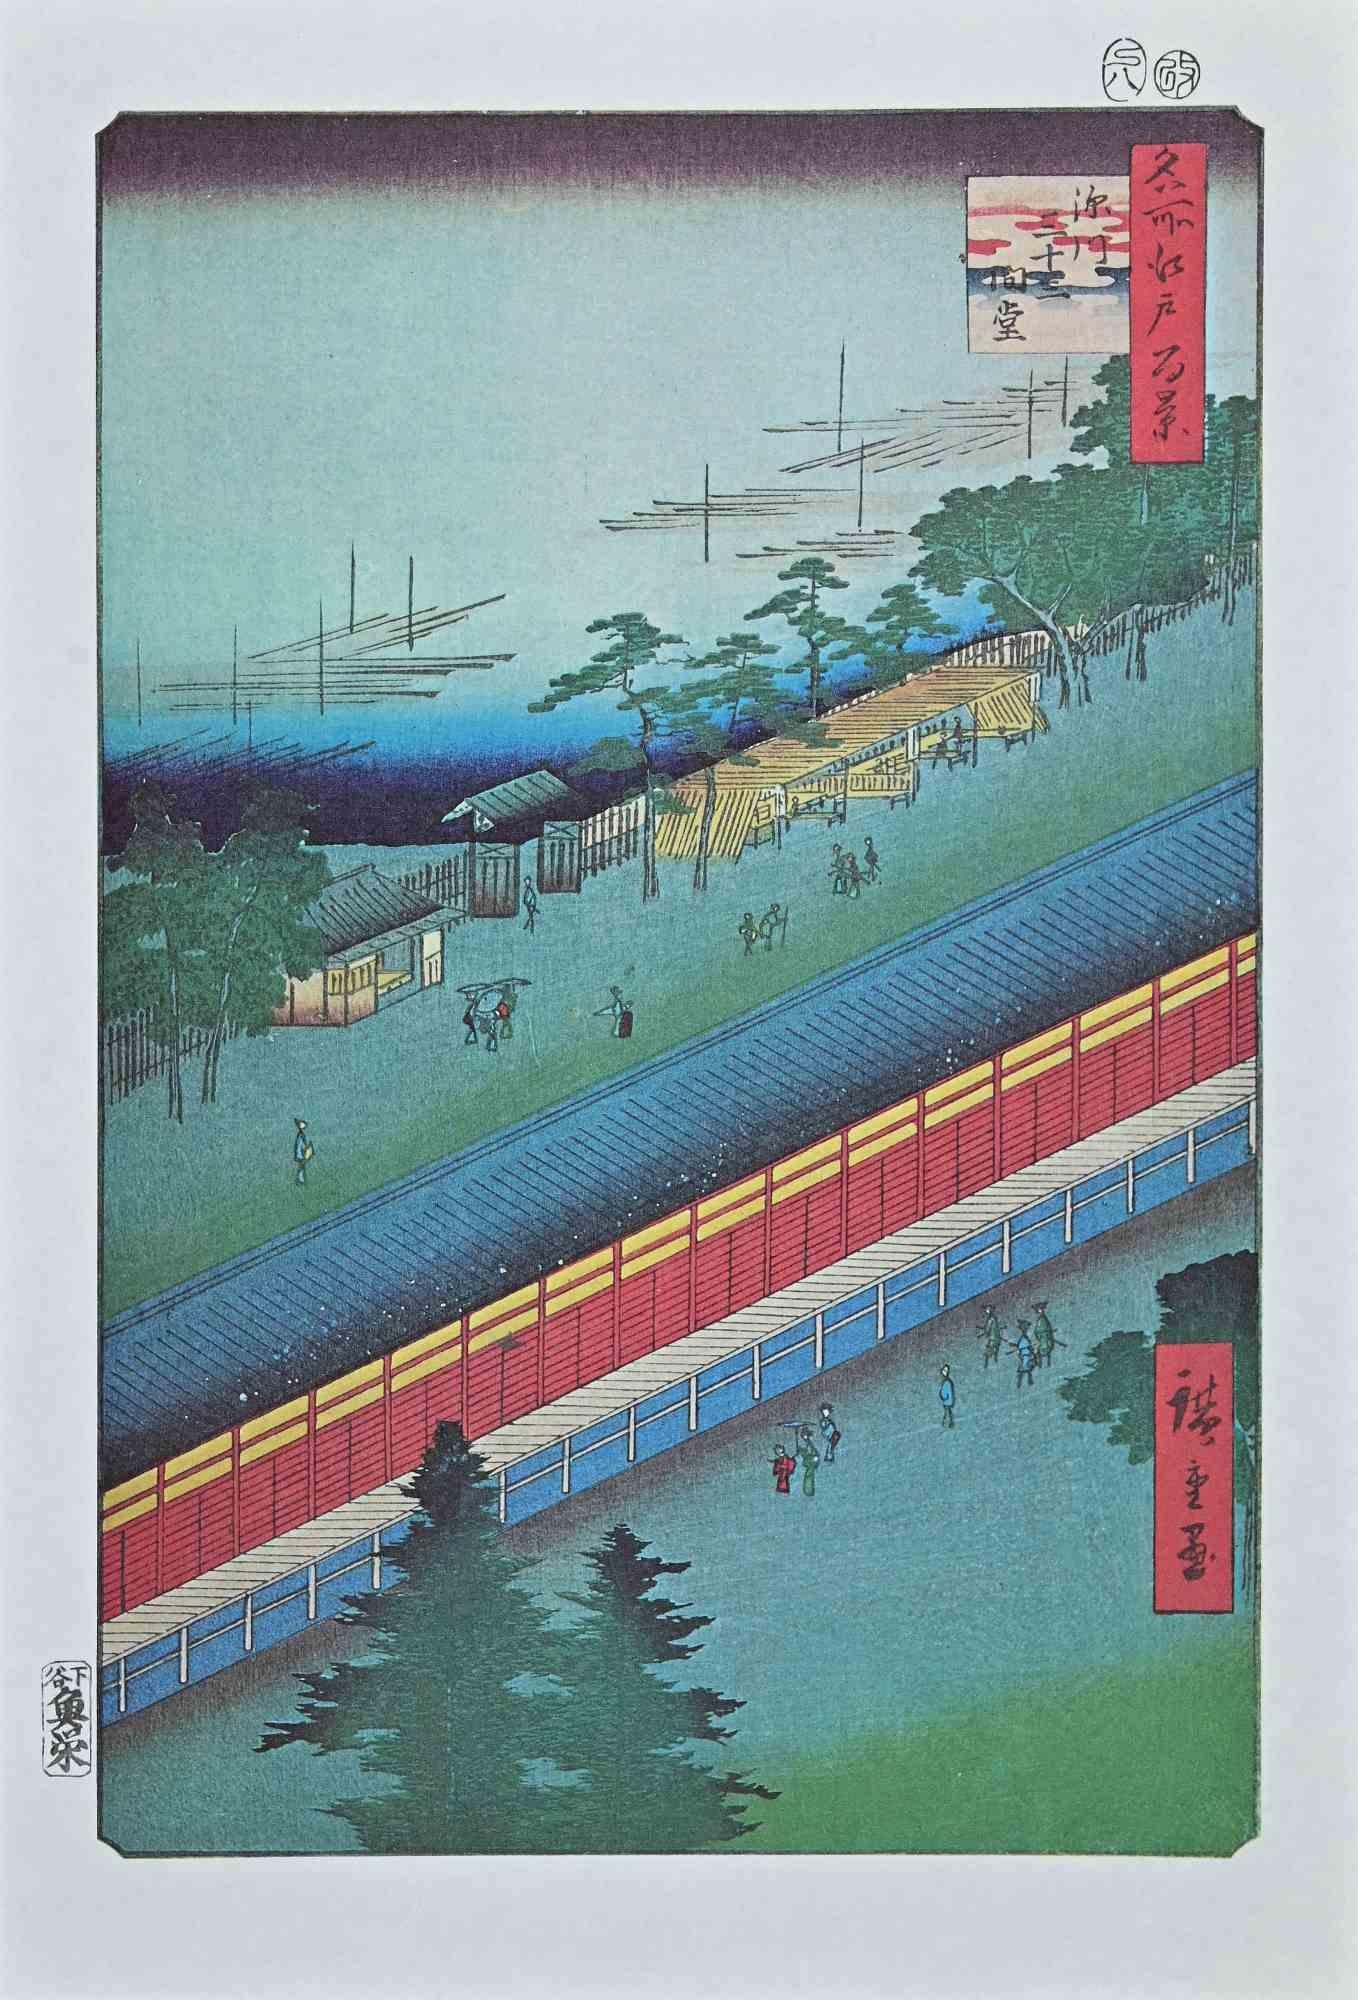 Le Hall des Trente-Trois Baies est une œuvre d'art moderne réalisée au milieu du 20e siècle.

Lithographie en couleurs mixtes d'après une gravure sur bois réalisée par Utagawa Hiroshige en 1857 et issue de la série "Meisho Edo Hyakkei" ("Cent vues